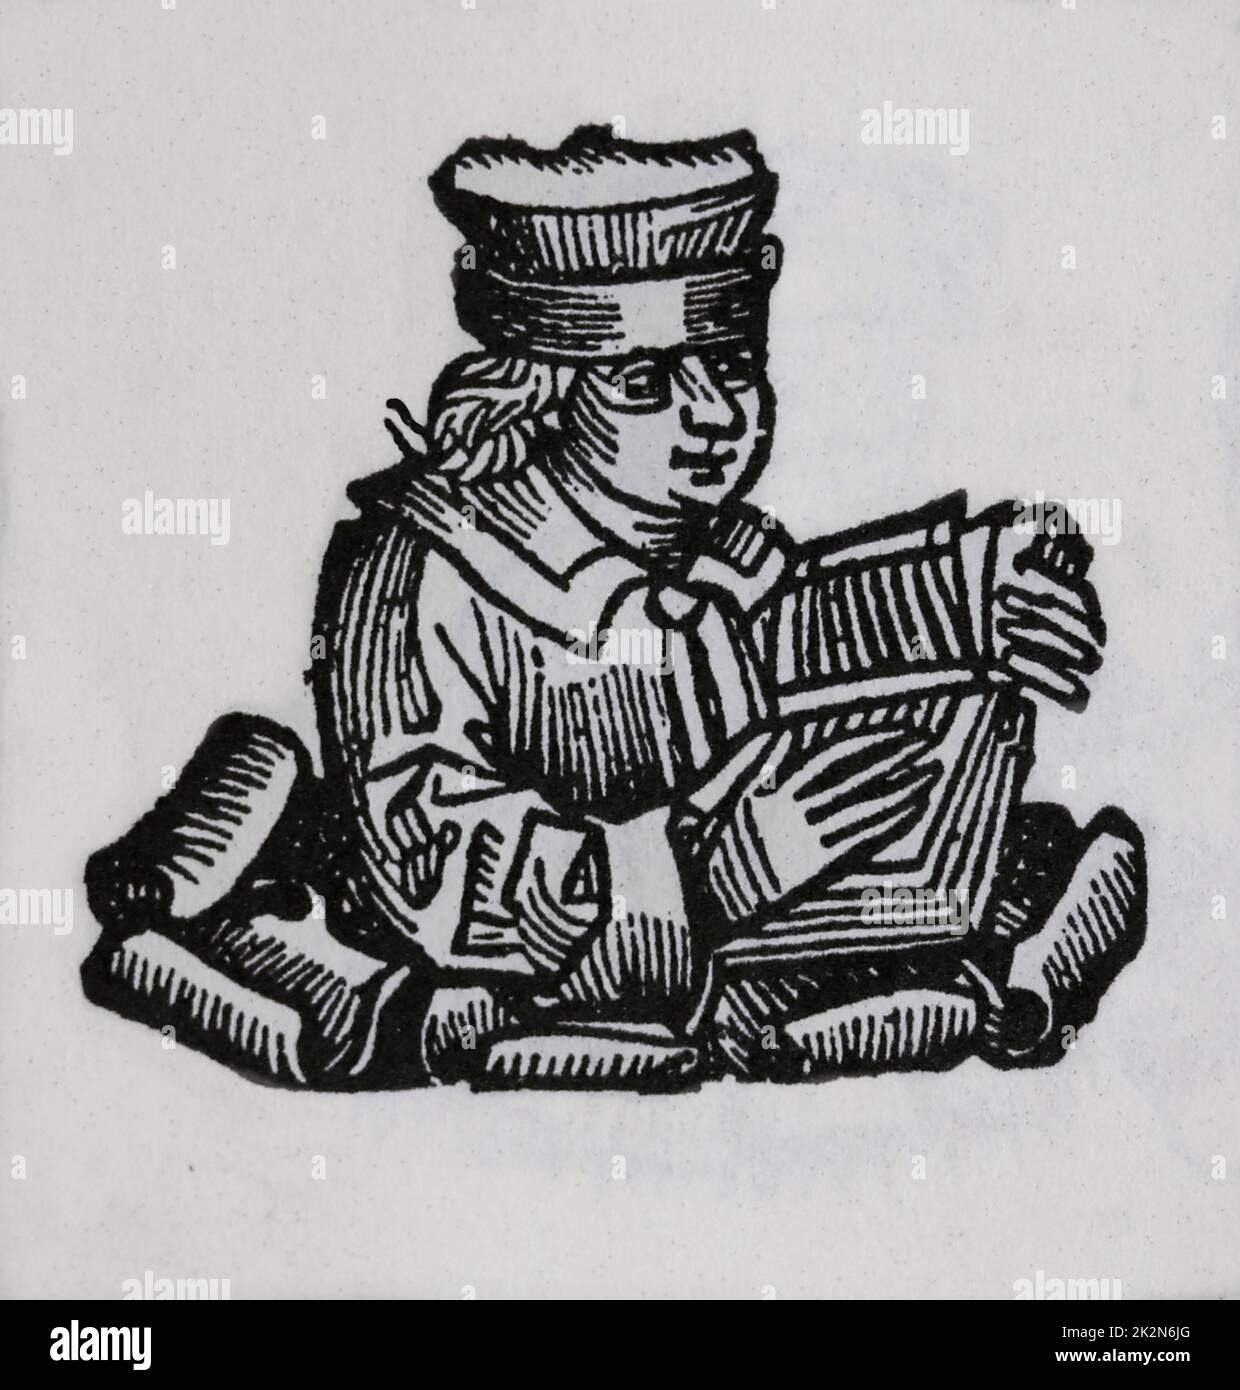 Hieronymus von Prag (1360-1416). Tschechischer scholastischer Philosoph. Wurde wegen Häresie verbrannt. Gravur. Die Nürnberger Krone', 15.. Jahrhundert. Stockfoto